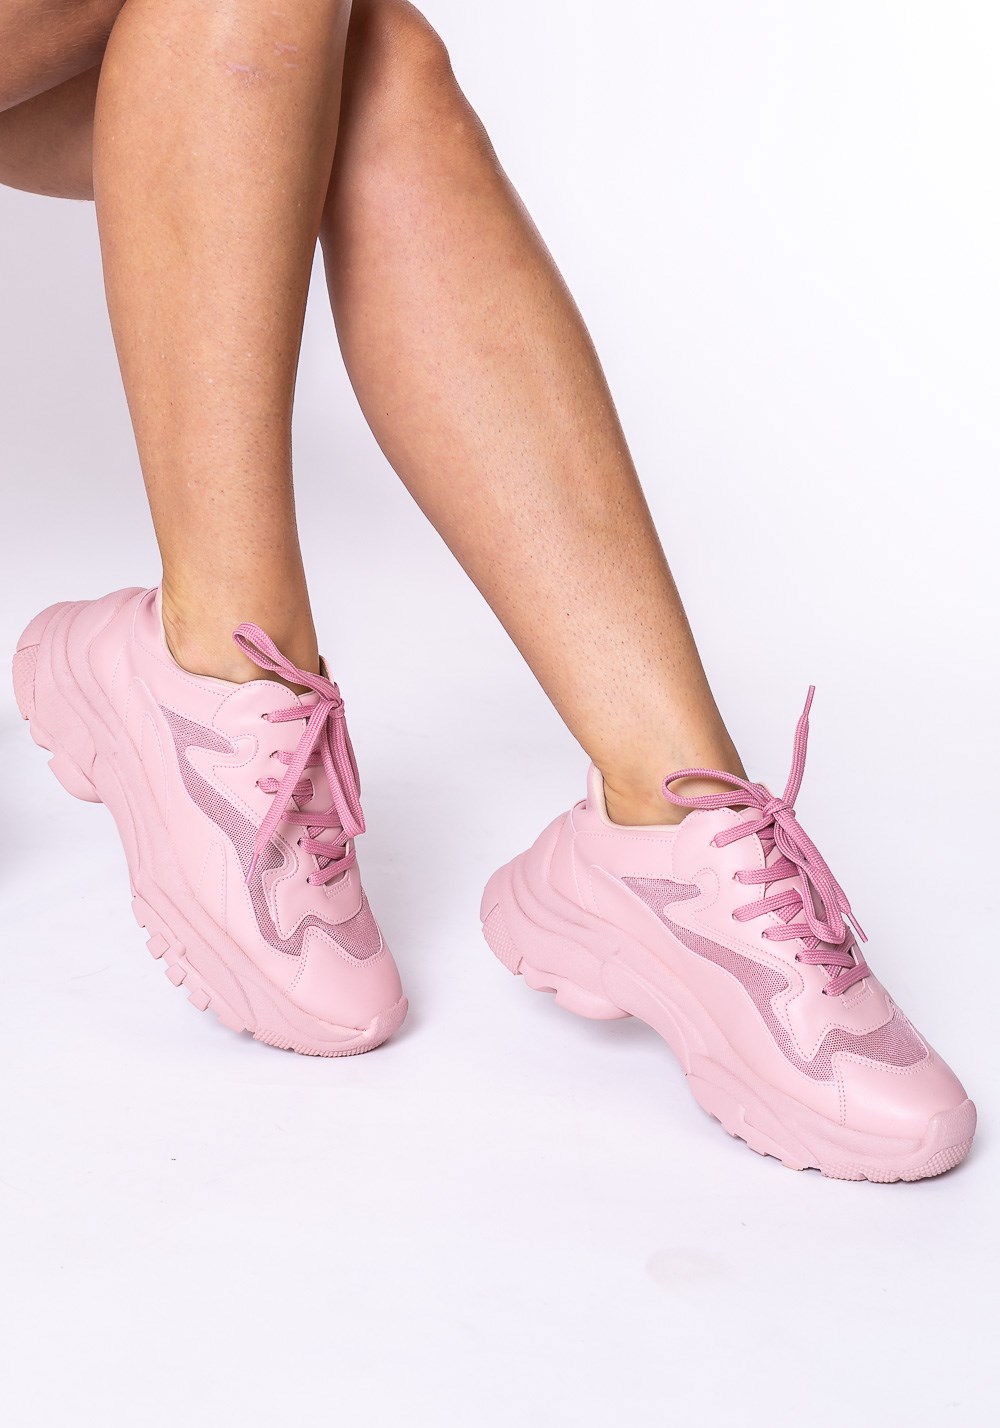 Tênis modelo skin shoes em tela rosa